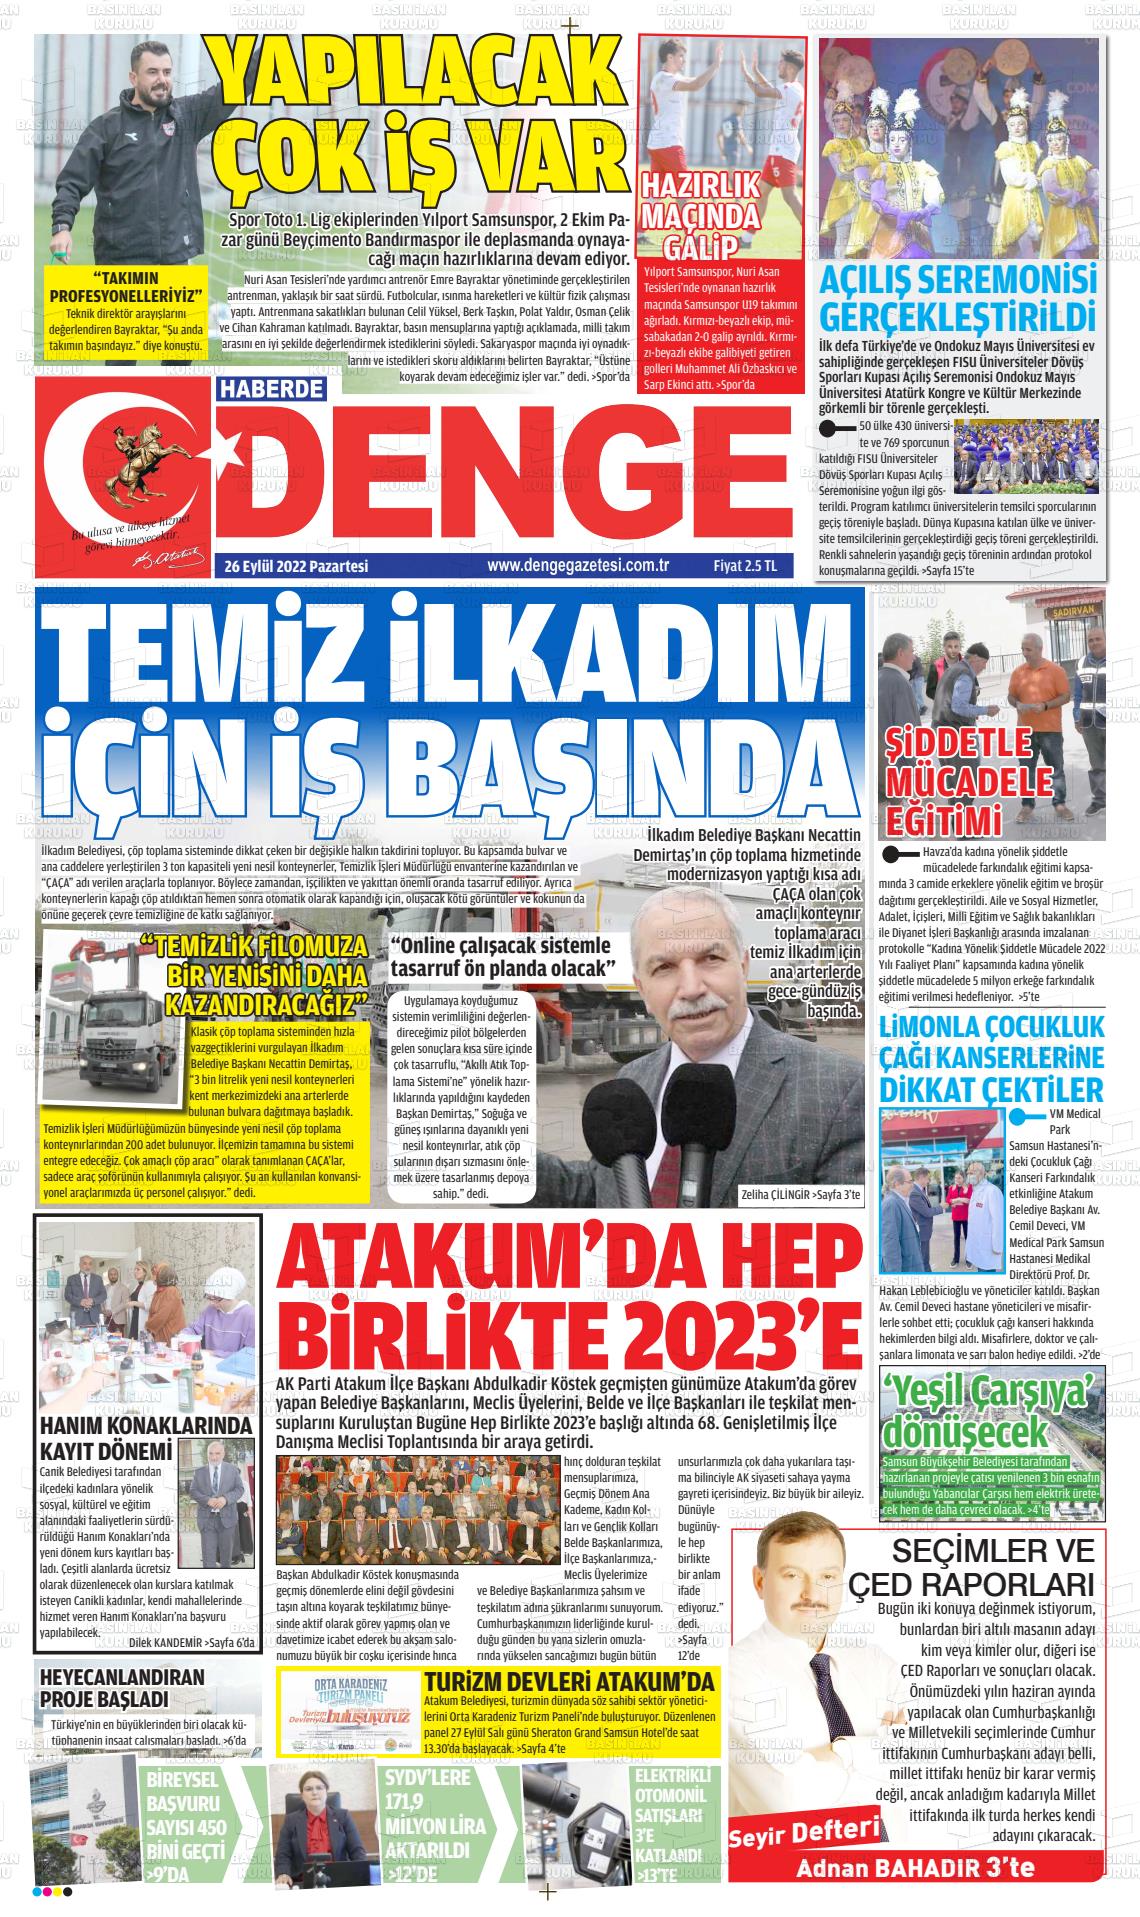 26 Eylül 2022 Samsun Denge Gazete Manşeti